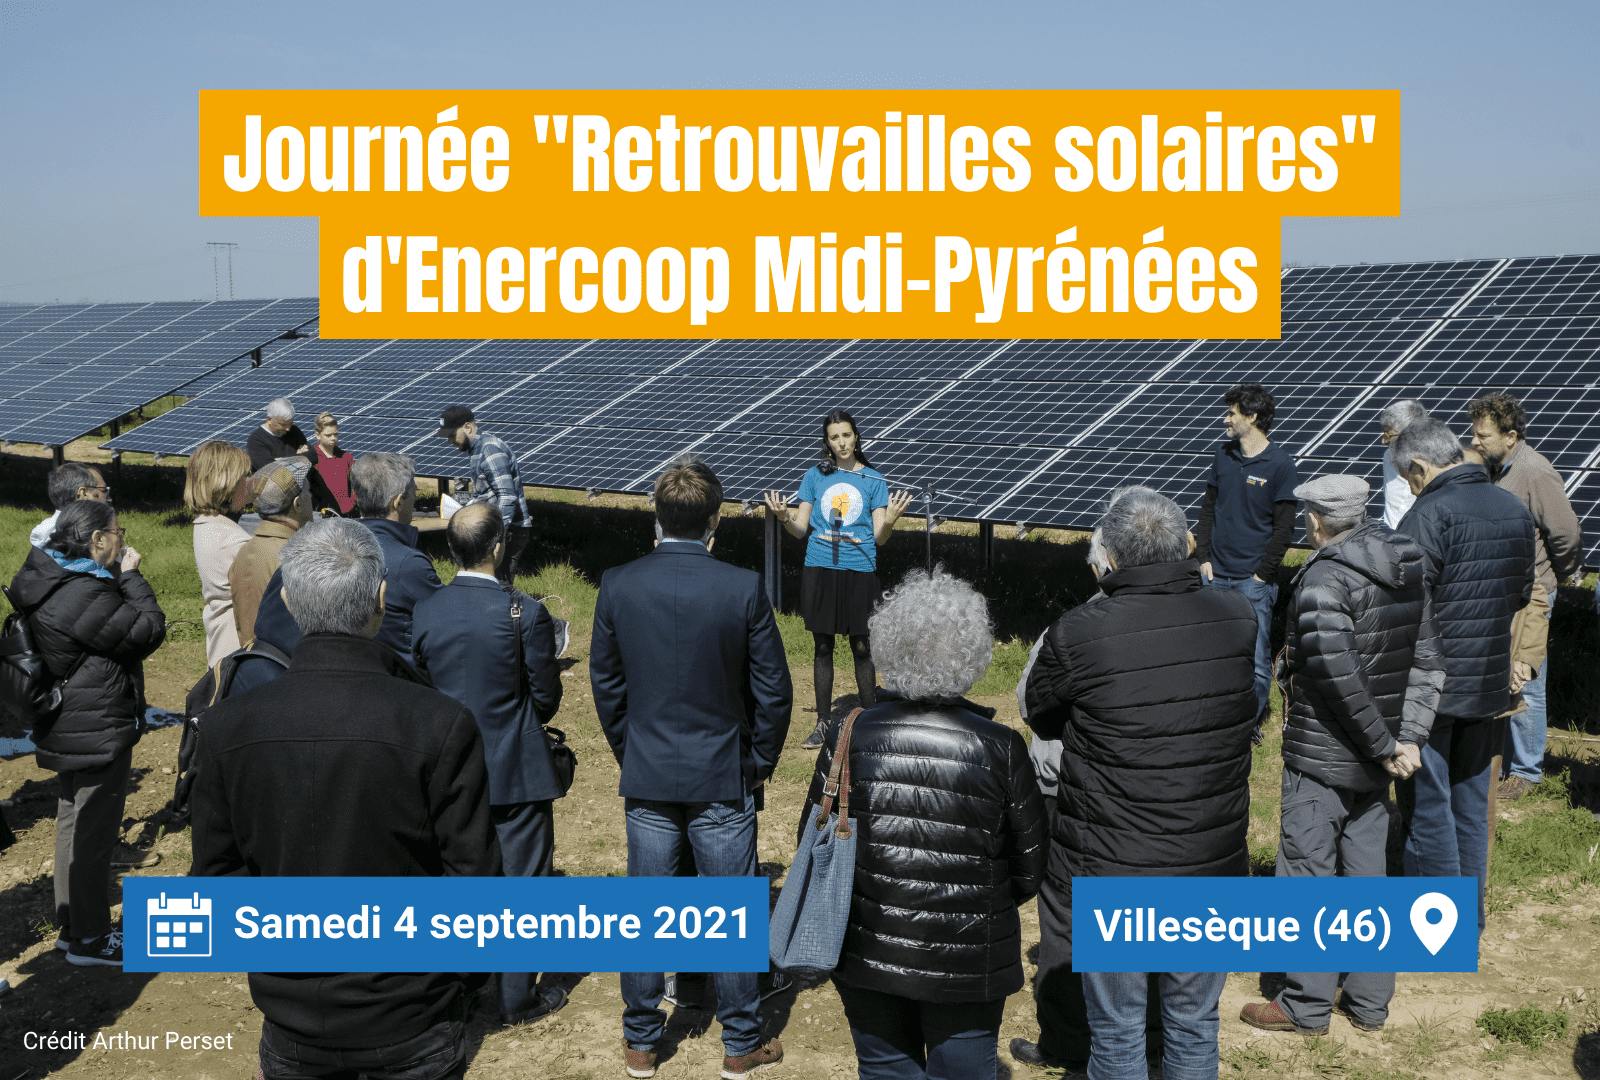 Visuel d'annonce de la journée "Retrouvailles solaires" organisée par Enercoop Midi-Pyrénées le 4 septembre 2021